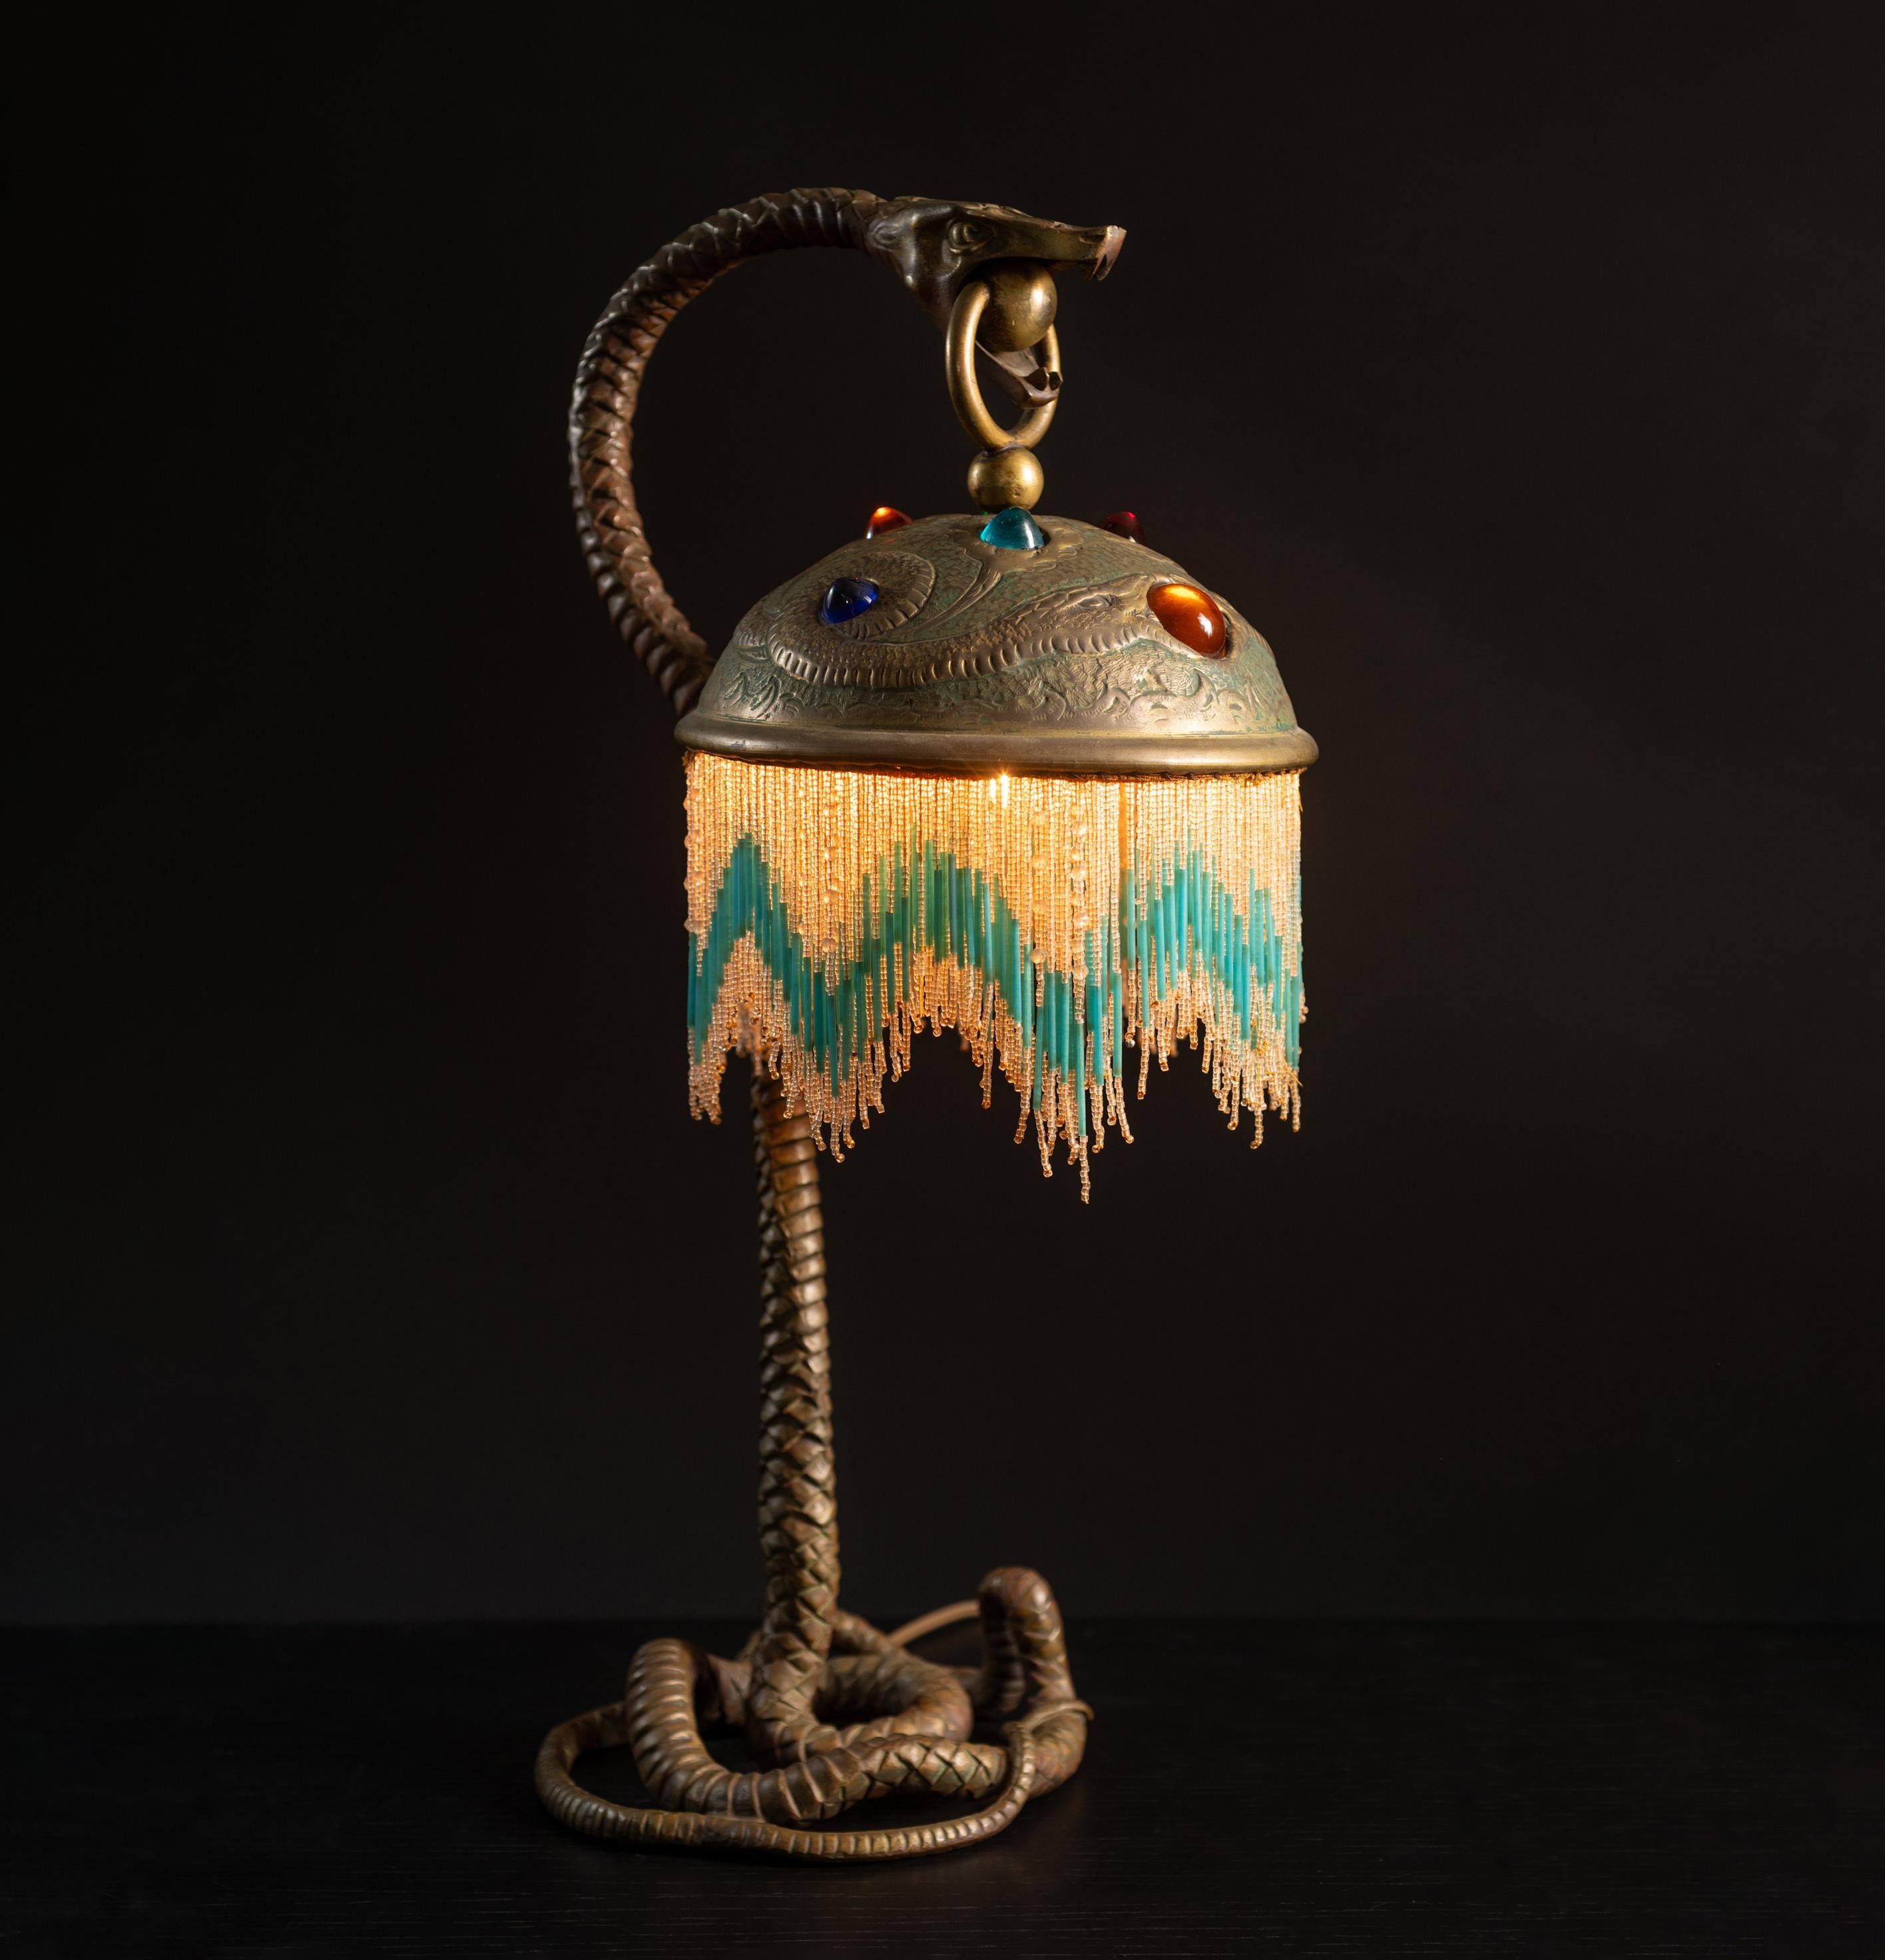 On sait peu de choses sur les origines de cette lampe étonnante, si ce n'est qu'elle provient de France, vers 1900.